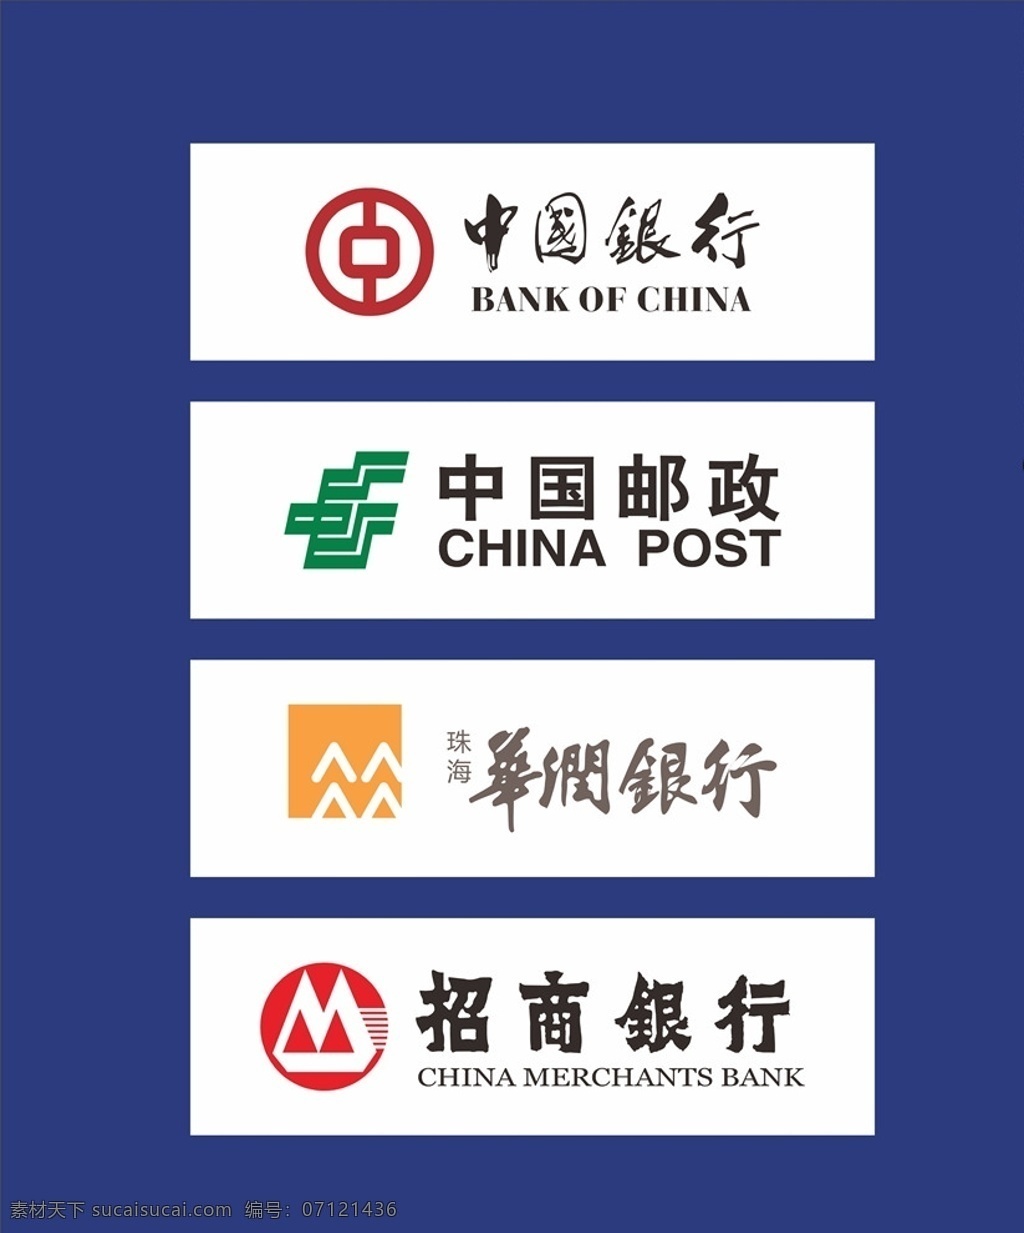 中国银行 中国邮政 华润银行 招商银行 logo 标志 金融 合作 银行 公共标识标志 元素 标志图标 企业